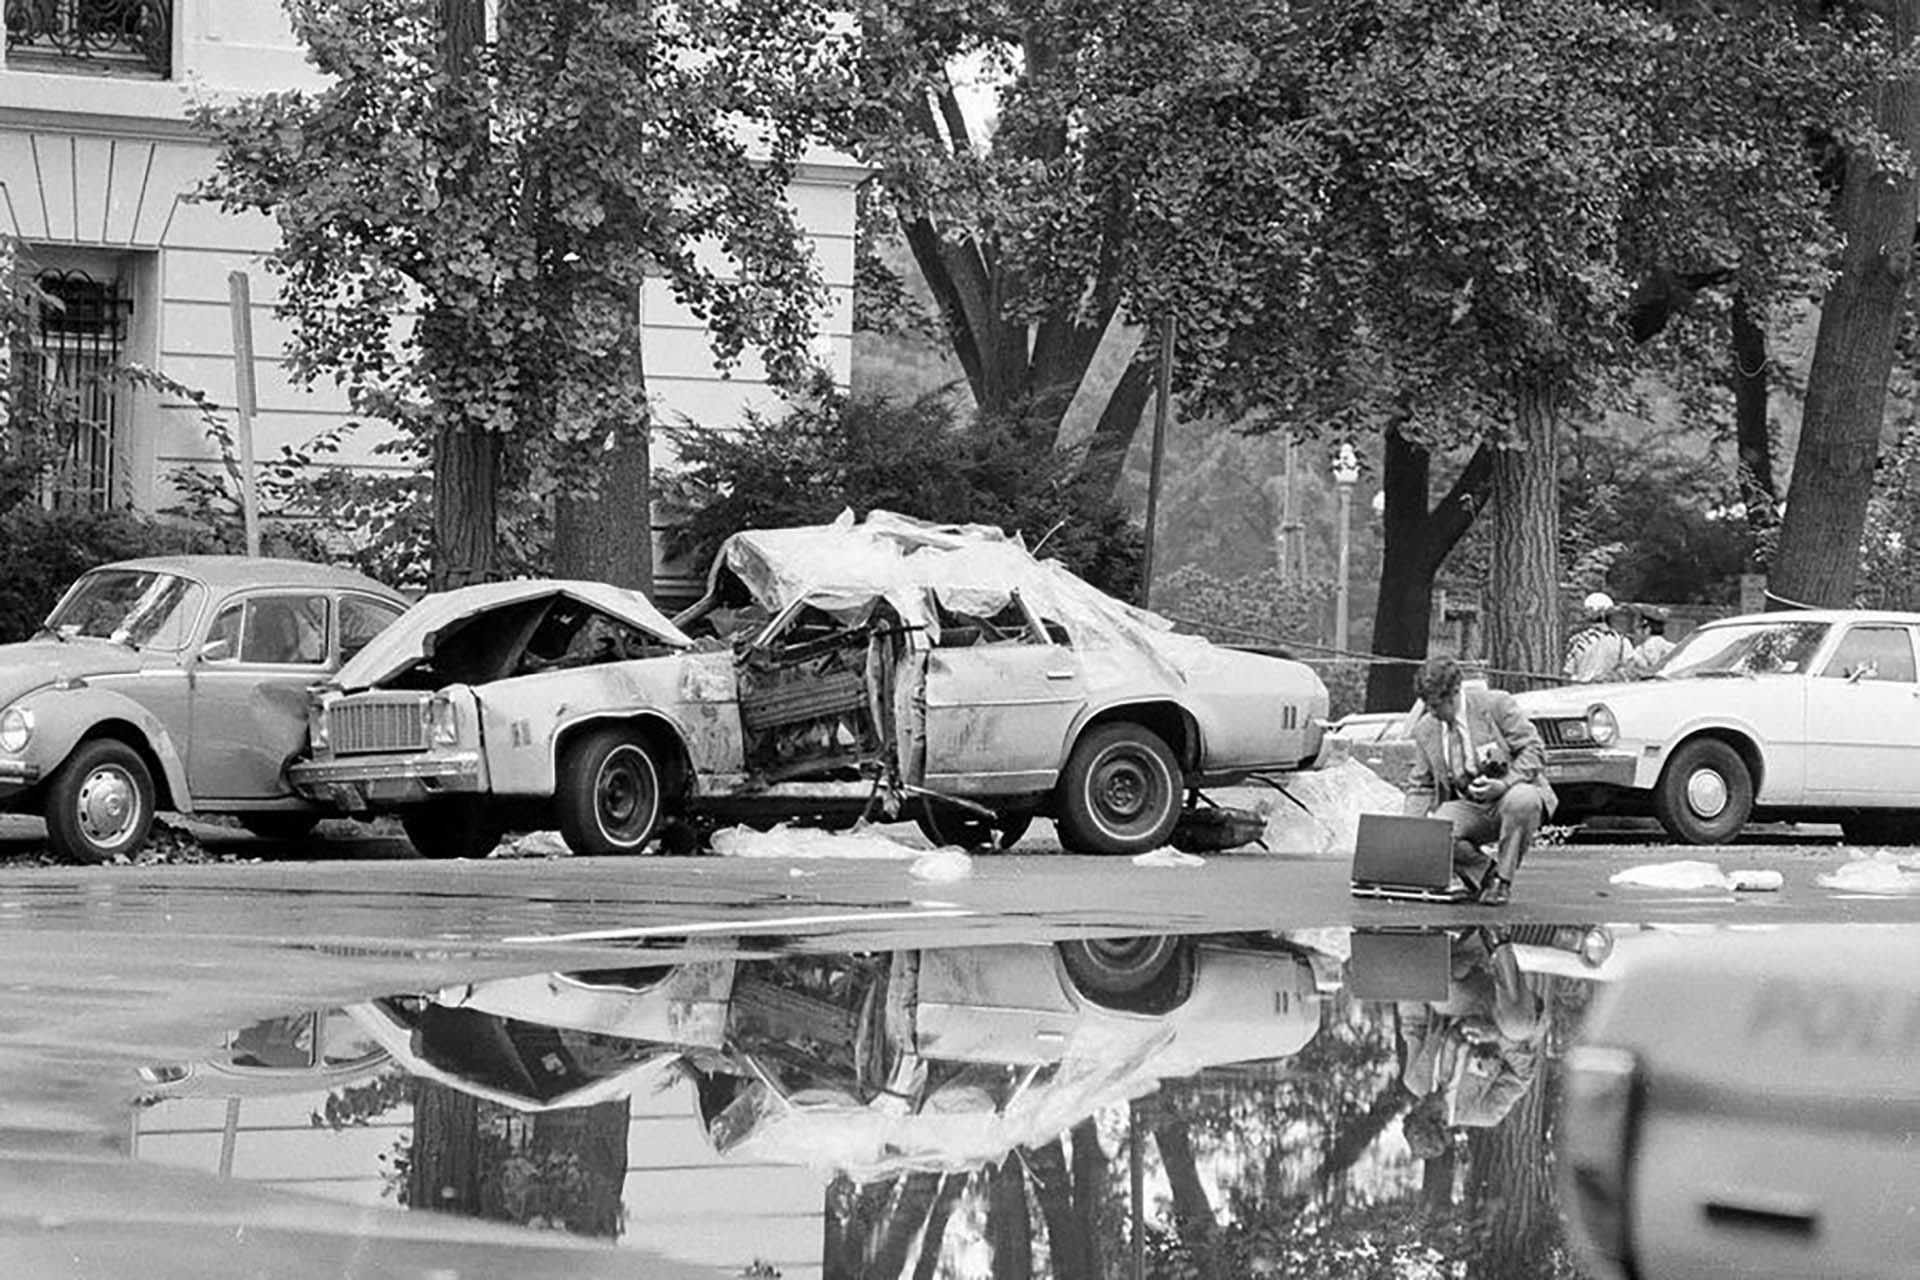 El 21 de septiembre de 1976, en el noroeste de Washington, un coche explotó: adentro estaban tres personas, una de ellas era Orlando Letelier, de 44 años, antiguo embajador chileno en Estados Unidos durante el gobierno de Allende (AP Photo/Peter Bregg)